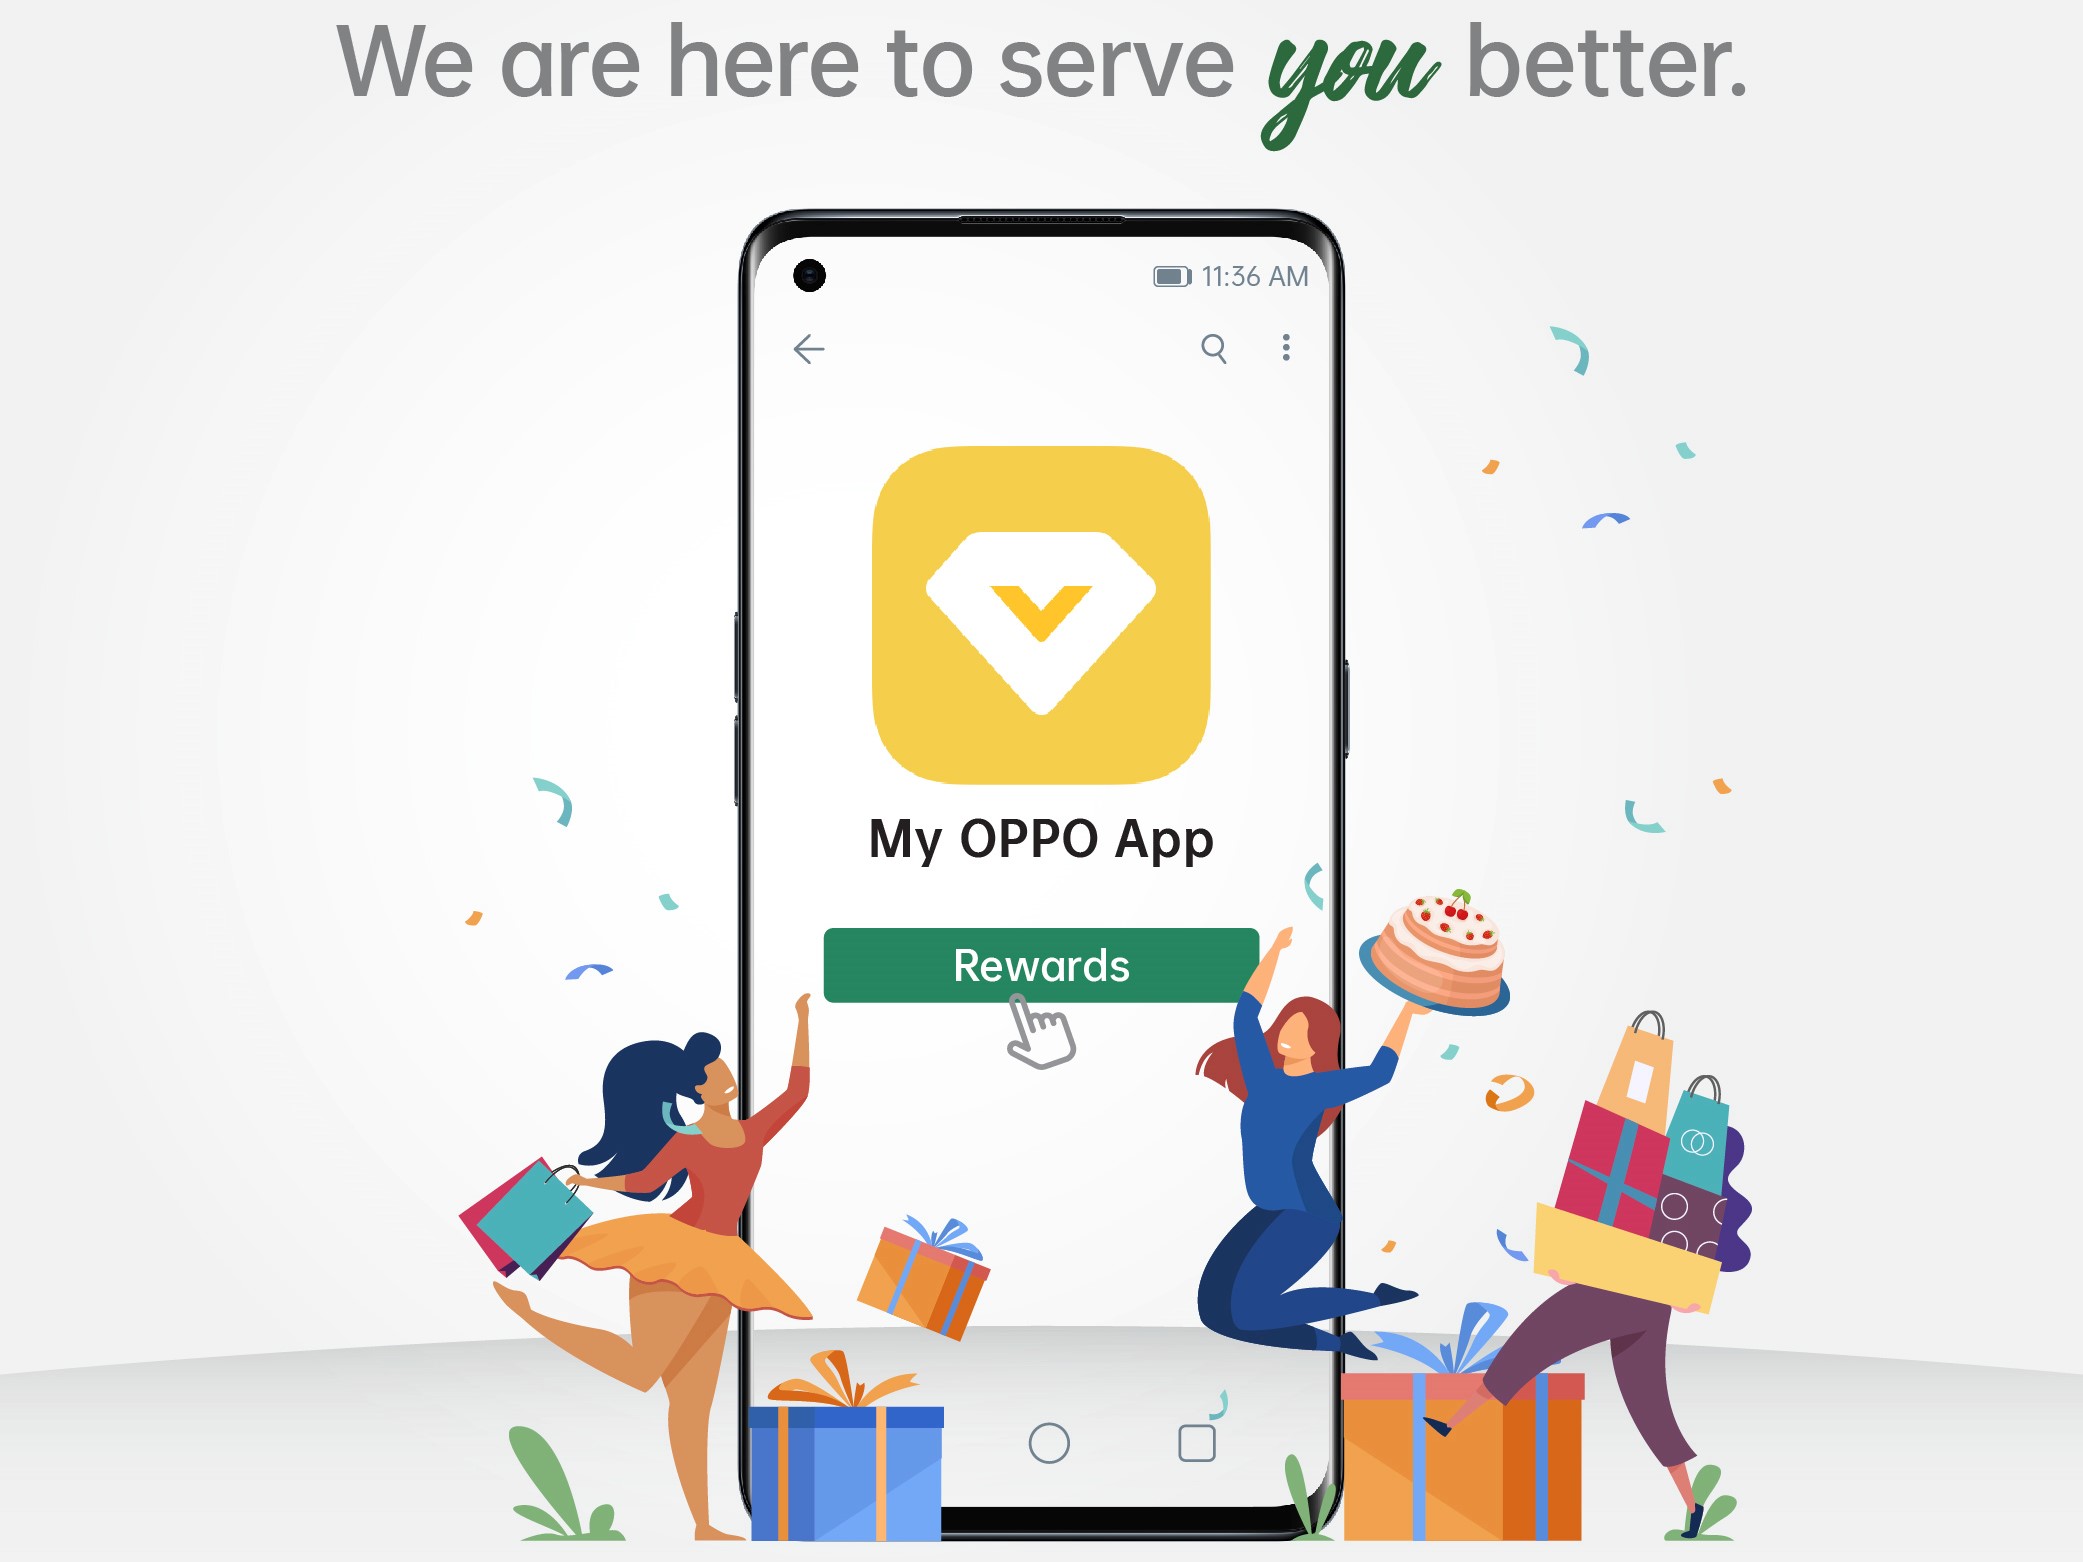 Cek garansi melalui aplikasi MyOPPO